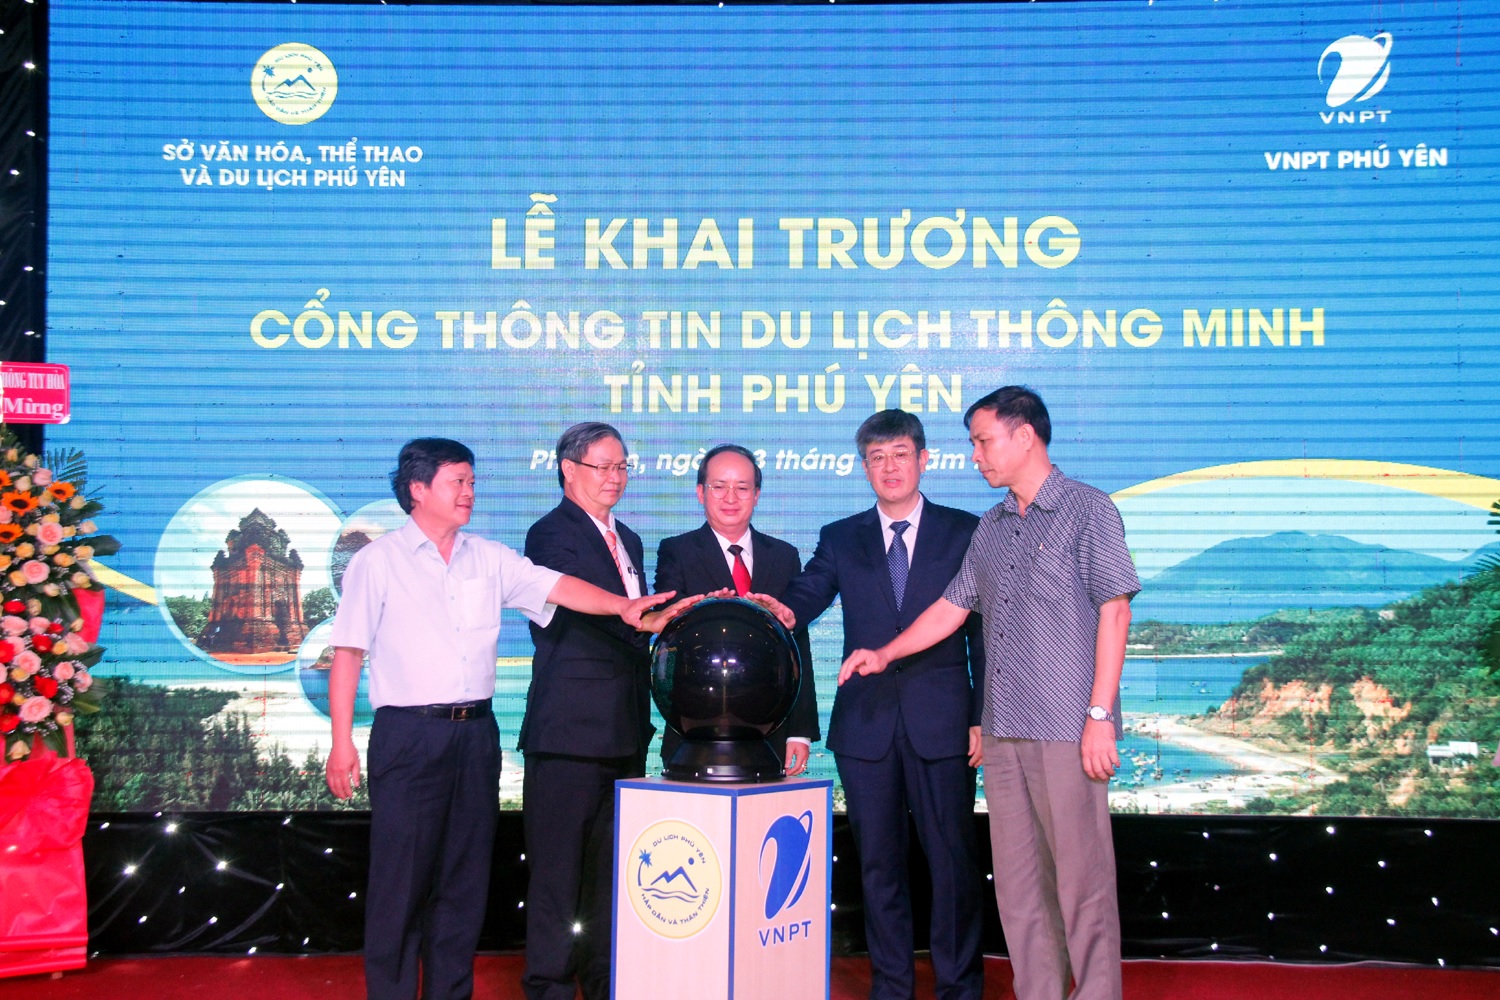 Đại diện VNPT và tỉnh Phú Yên nhấn nút khai trương Cổng thông tin du lịch thông minh.